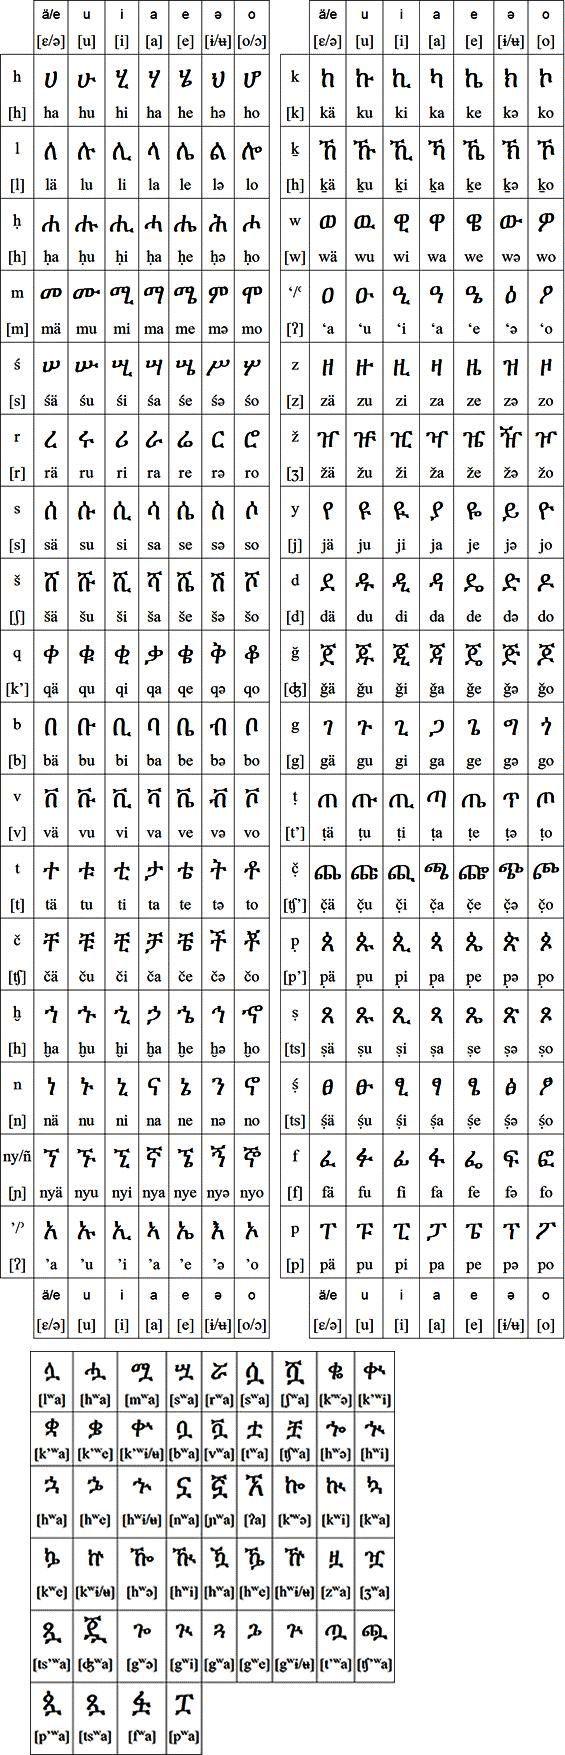 ethiopian alphabet grid